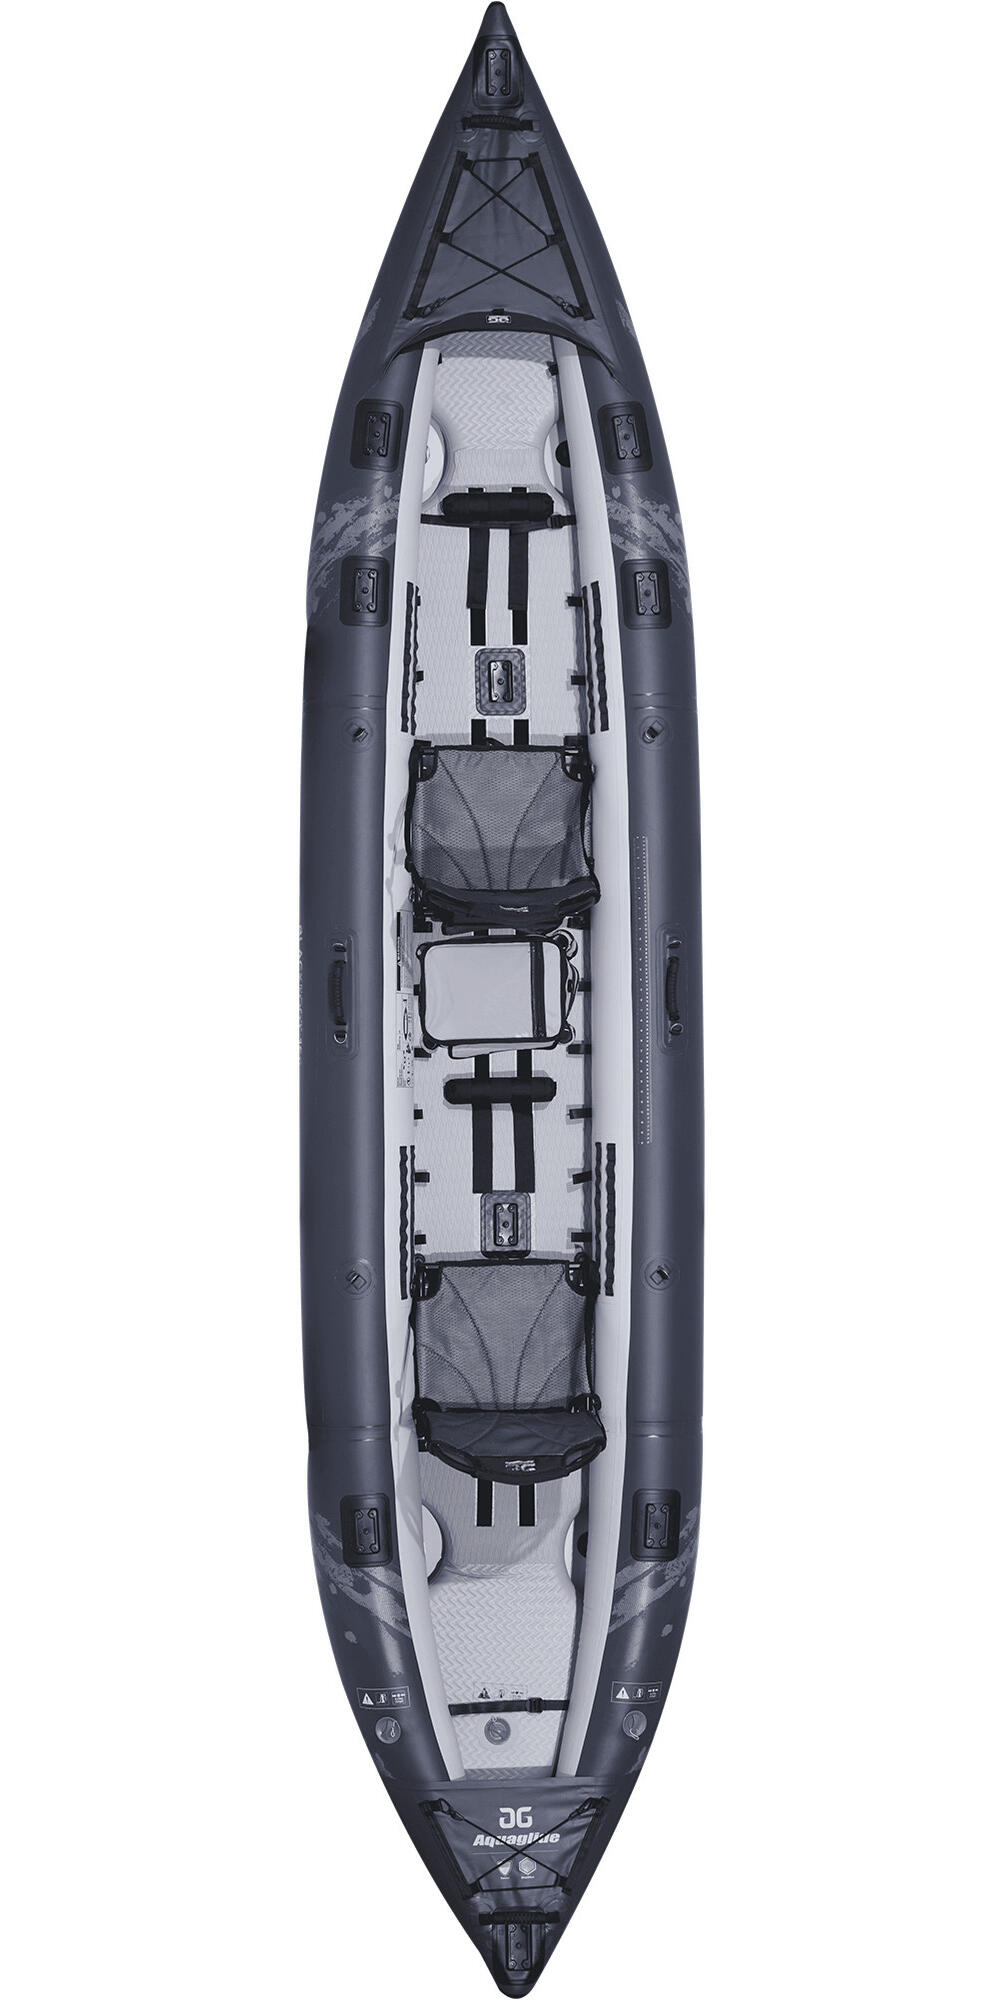 Blackfoot Angler 160 2 Person Inflatable Kayak AQUAGLIDE